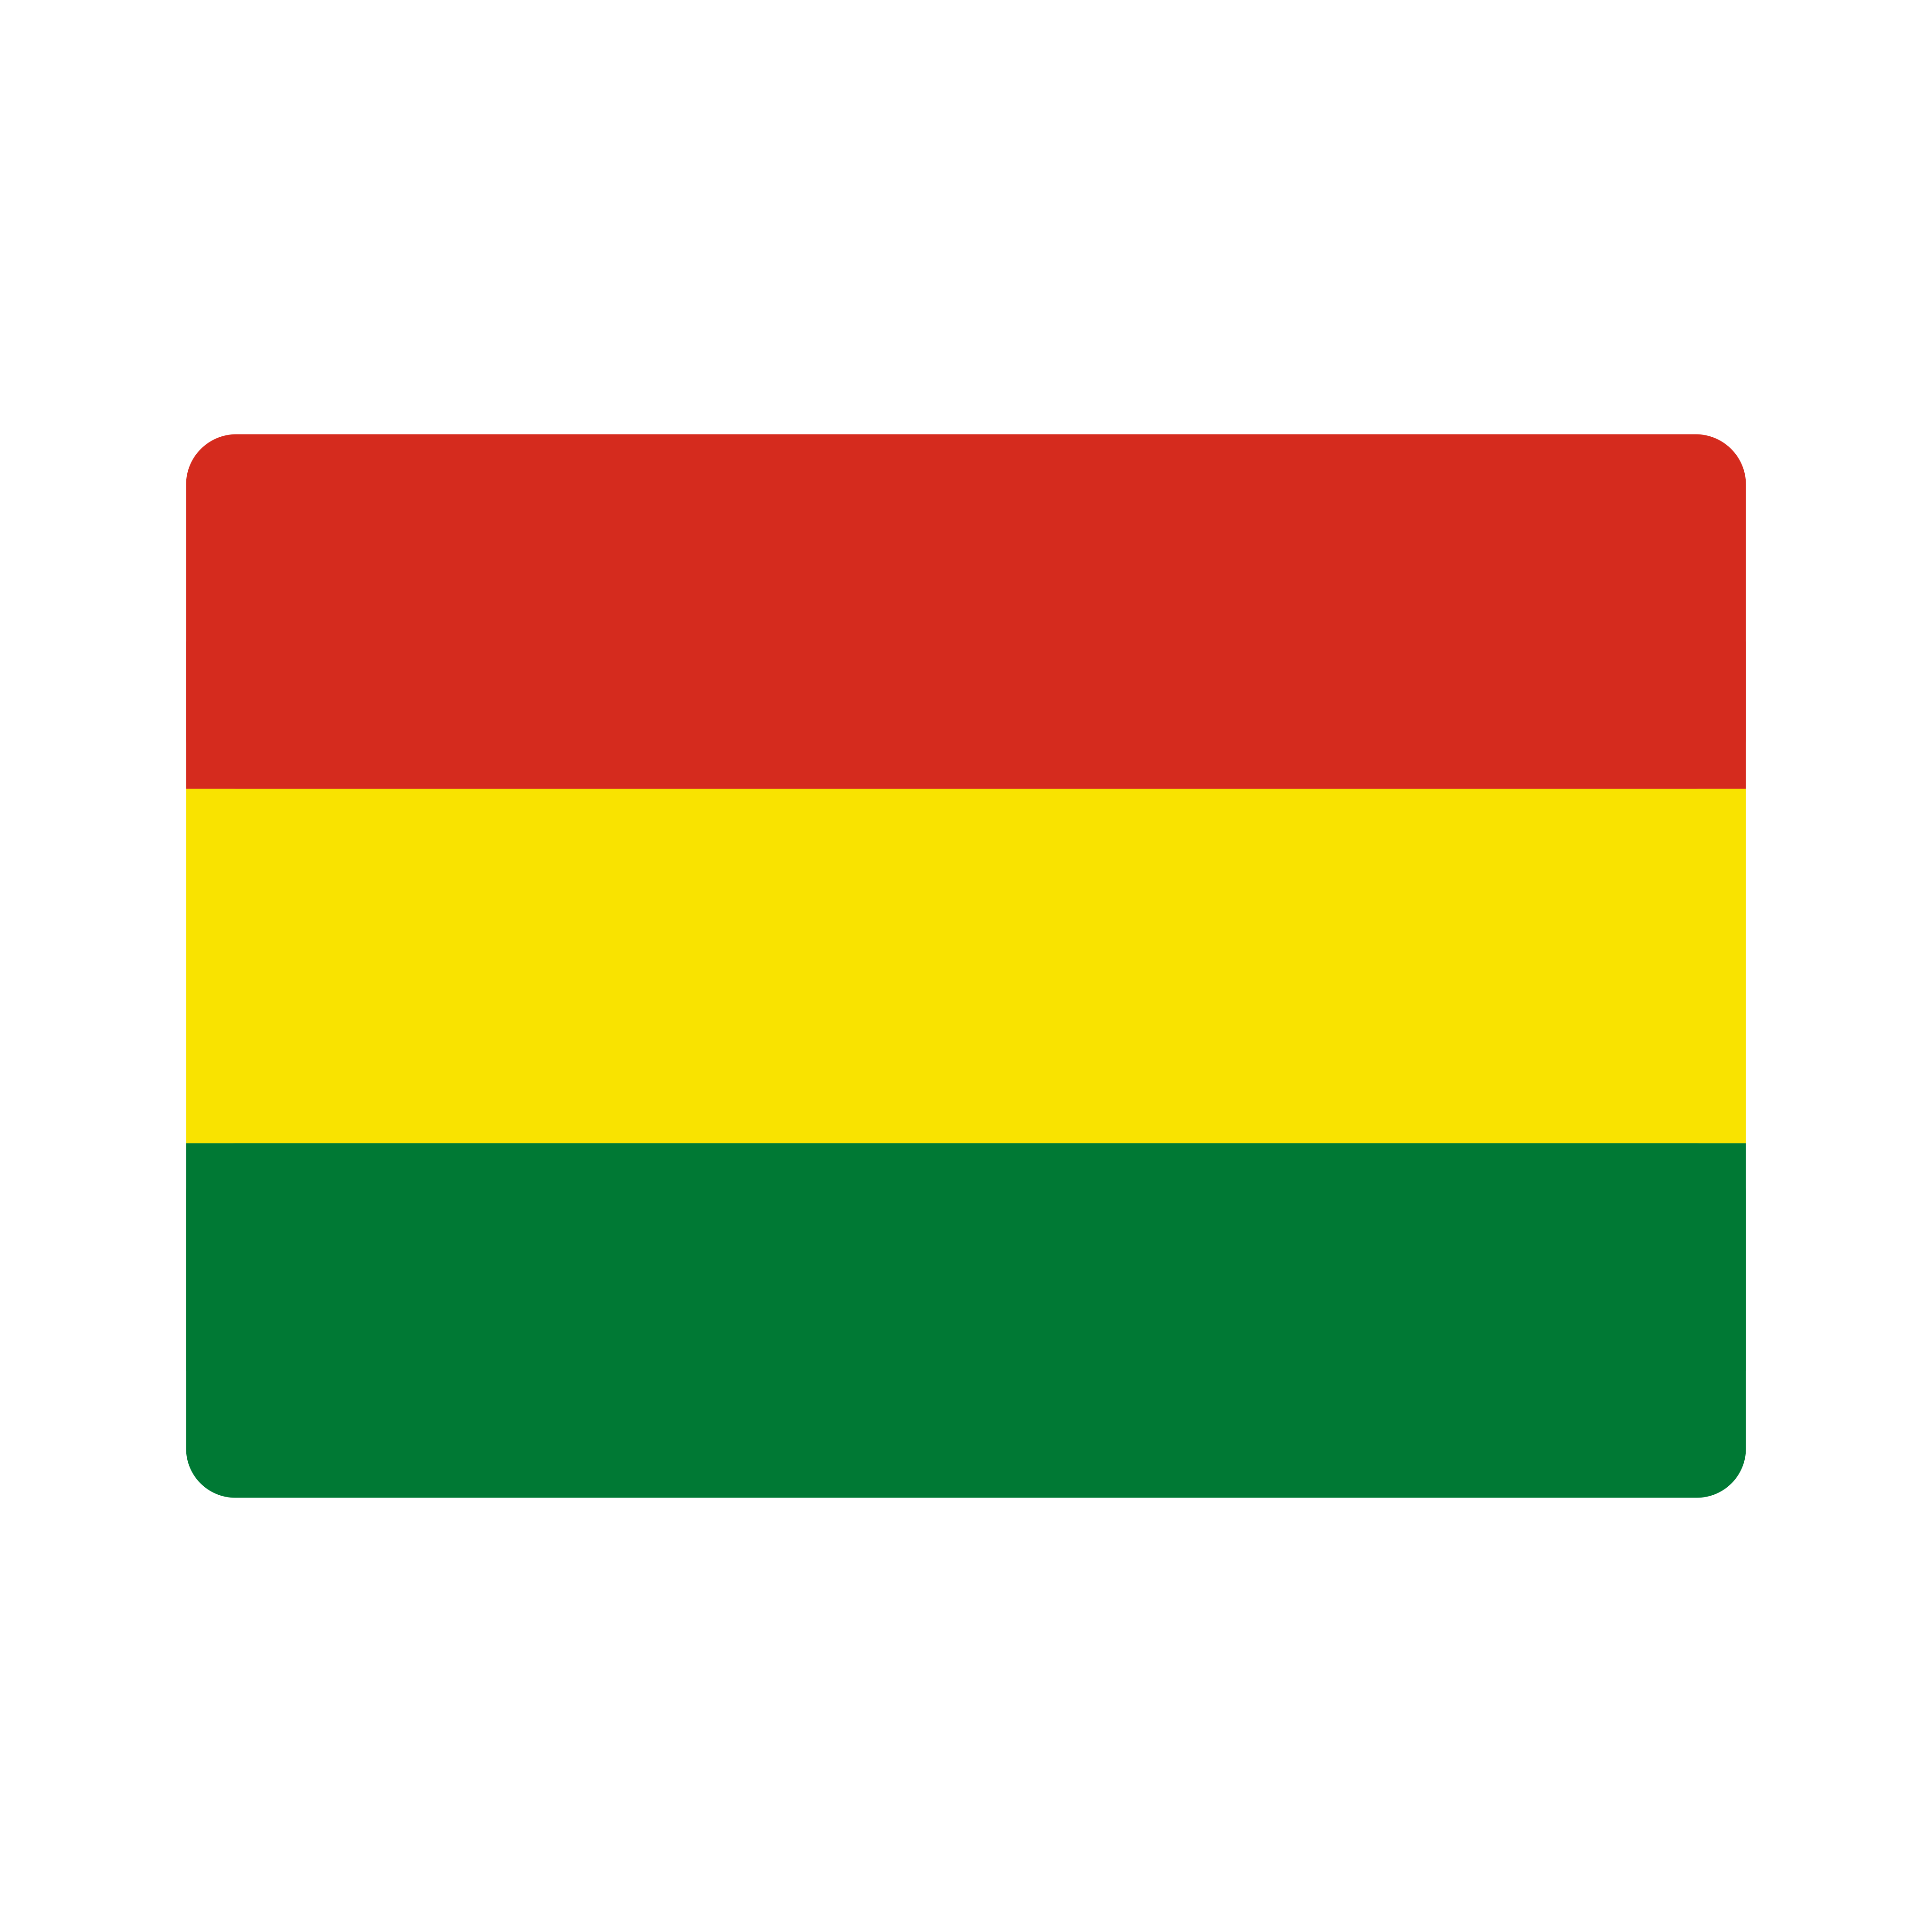 bandeira bolivia flag 0 - Flag of Bolivia